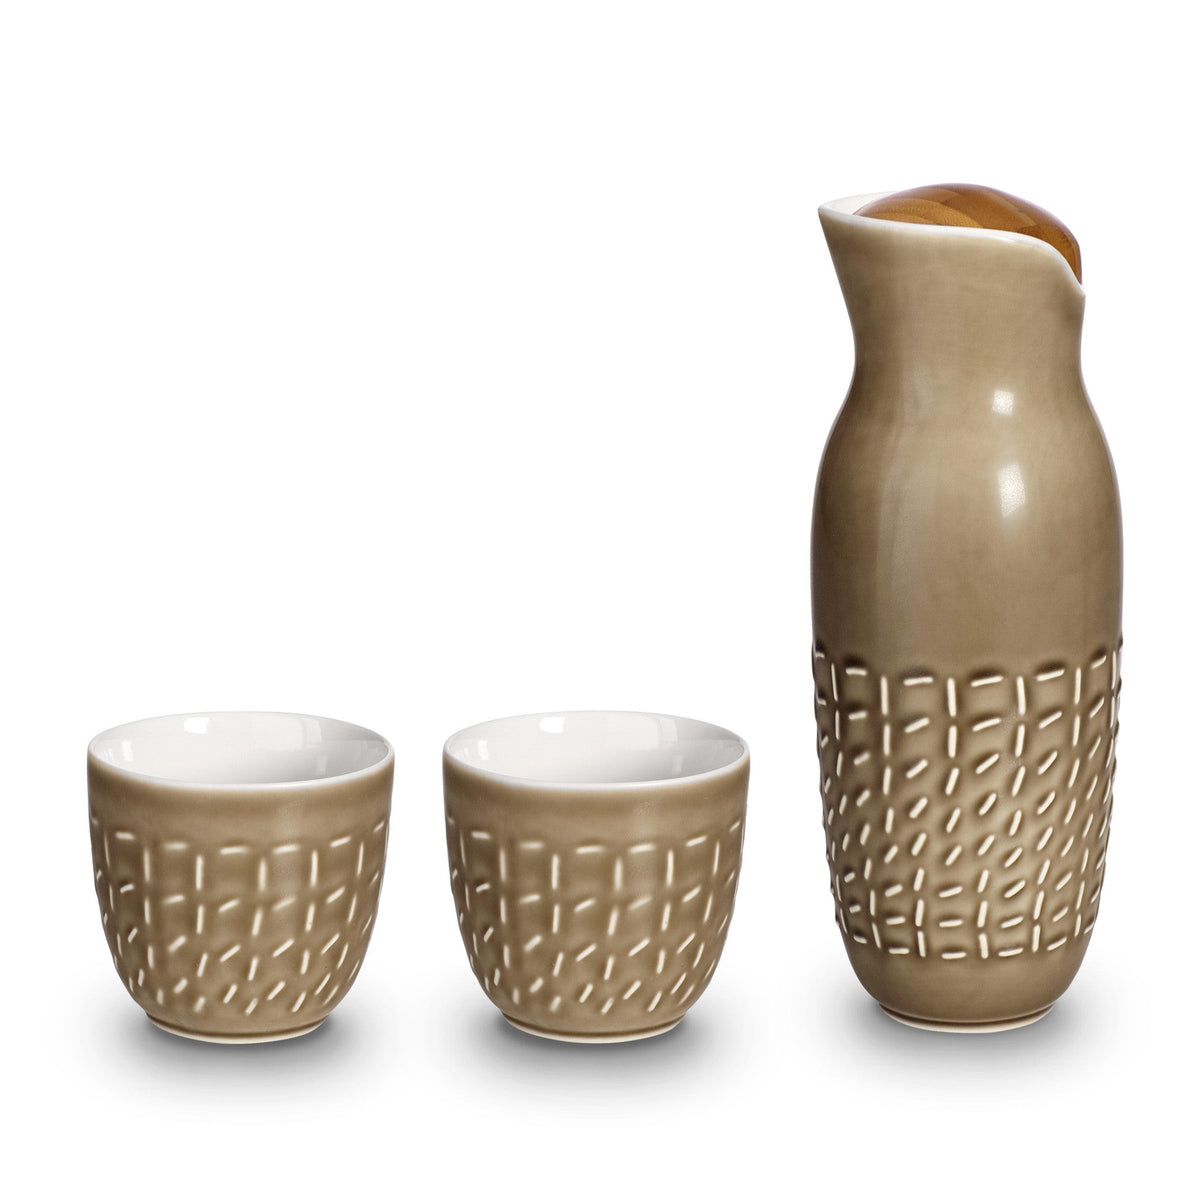 Footprint Carafe Set with Tea Cups (no Handles), Carafe 31oz, Cup 10 oz, Ceramics, Bamboo-3